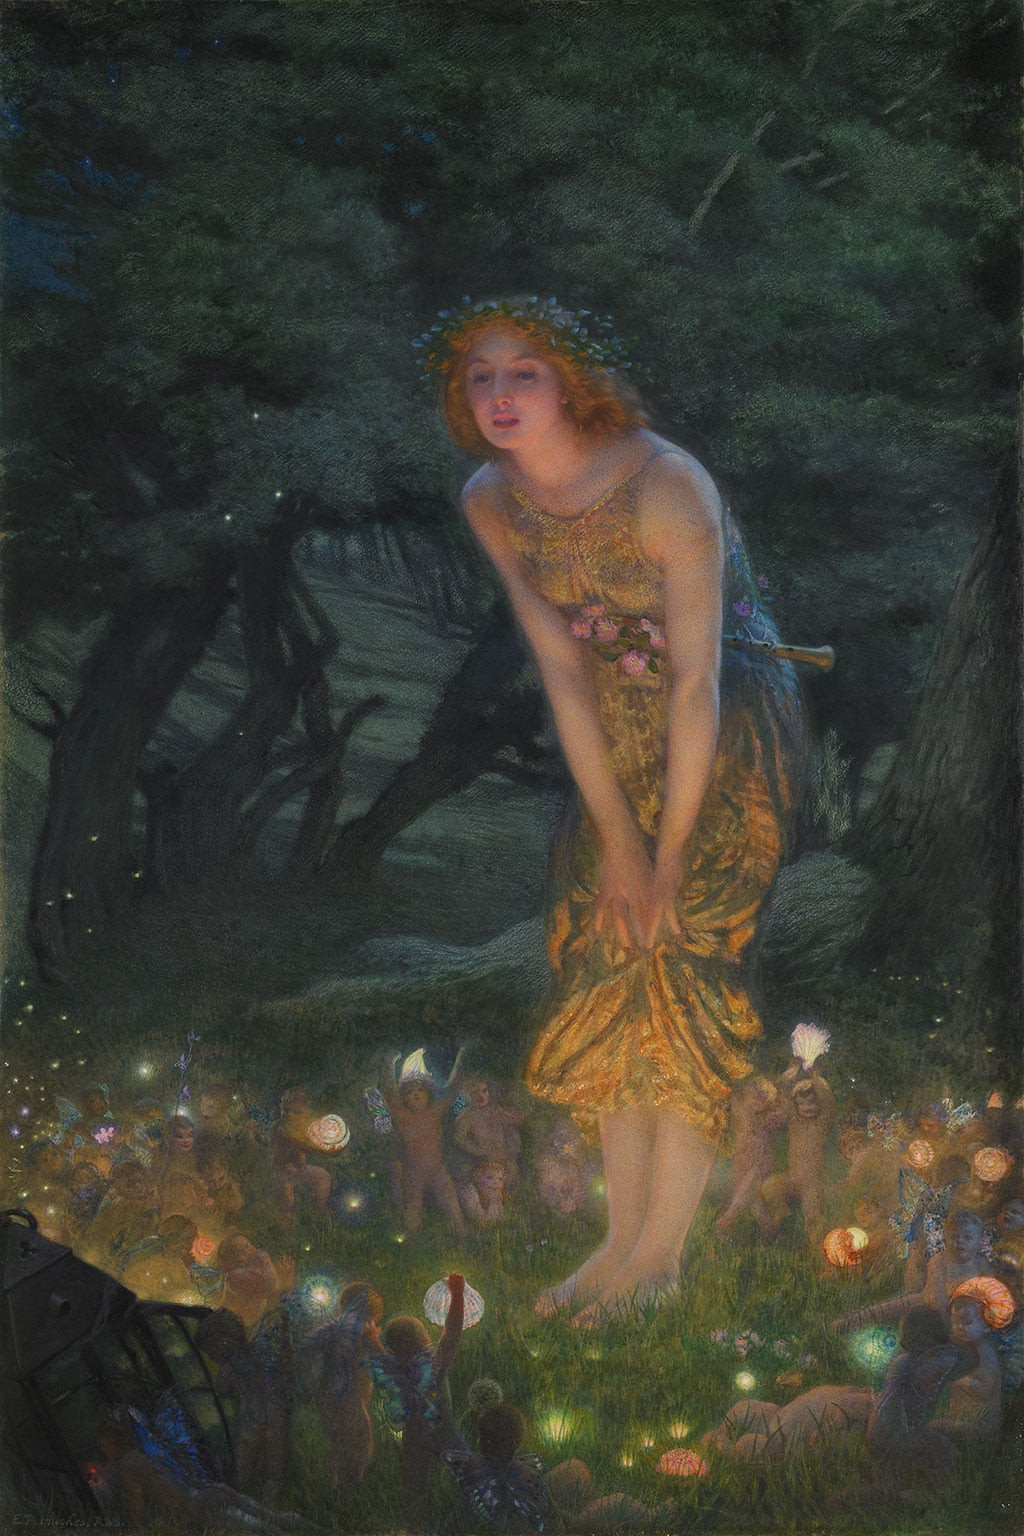 Midsummer Eve by Edward Robert Hughes, 1908